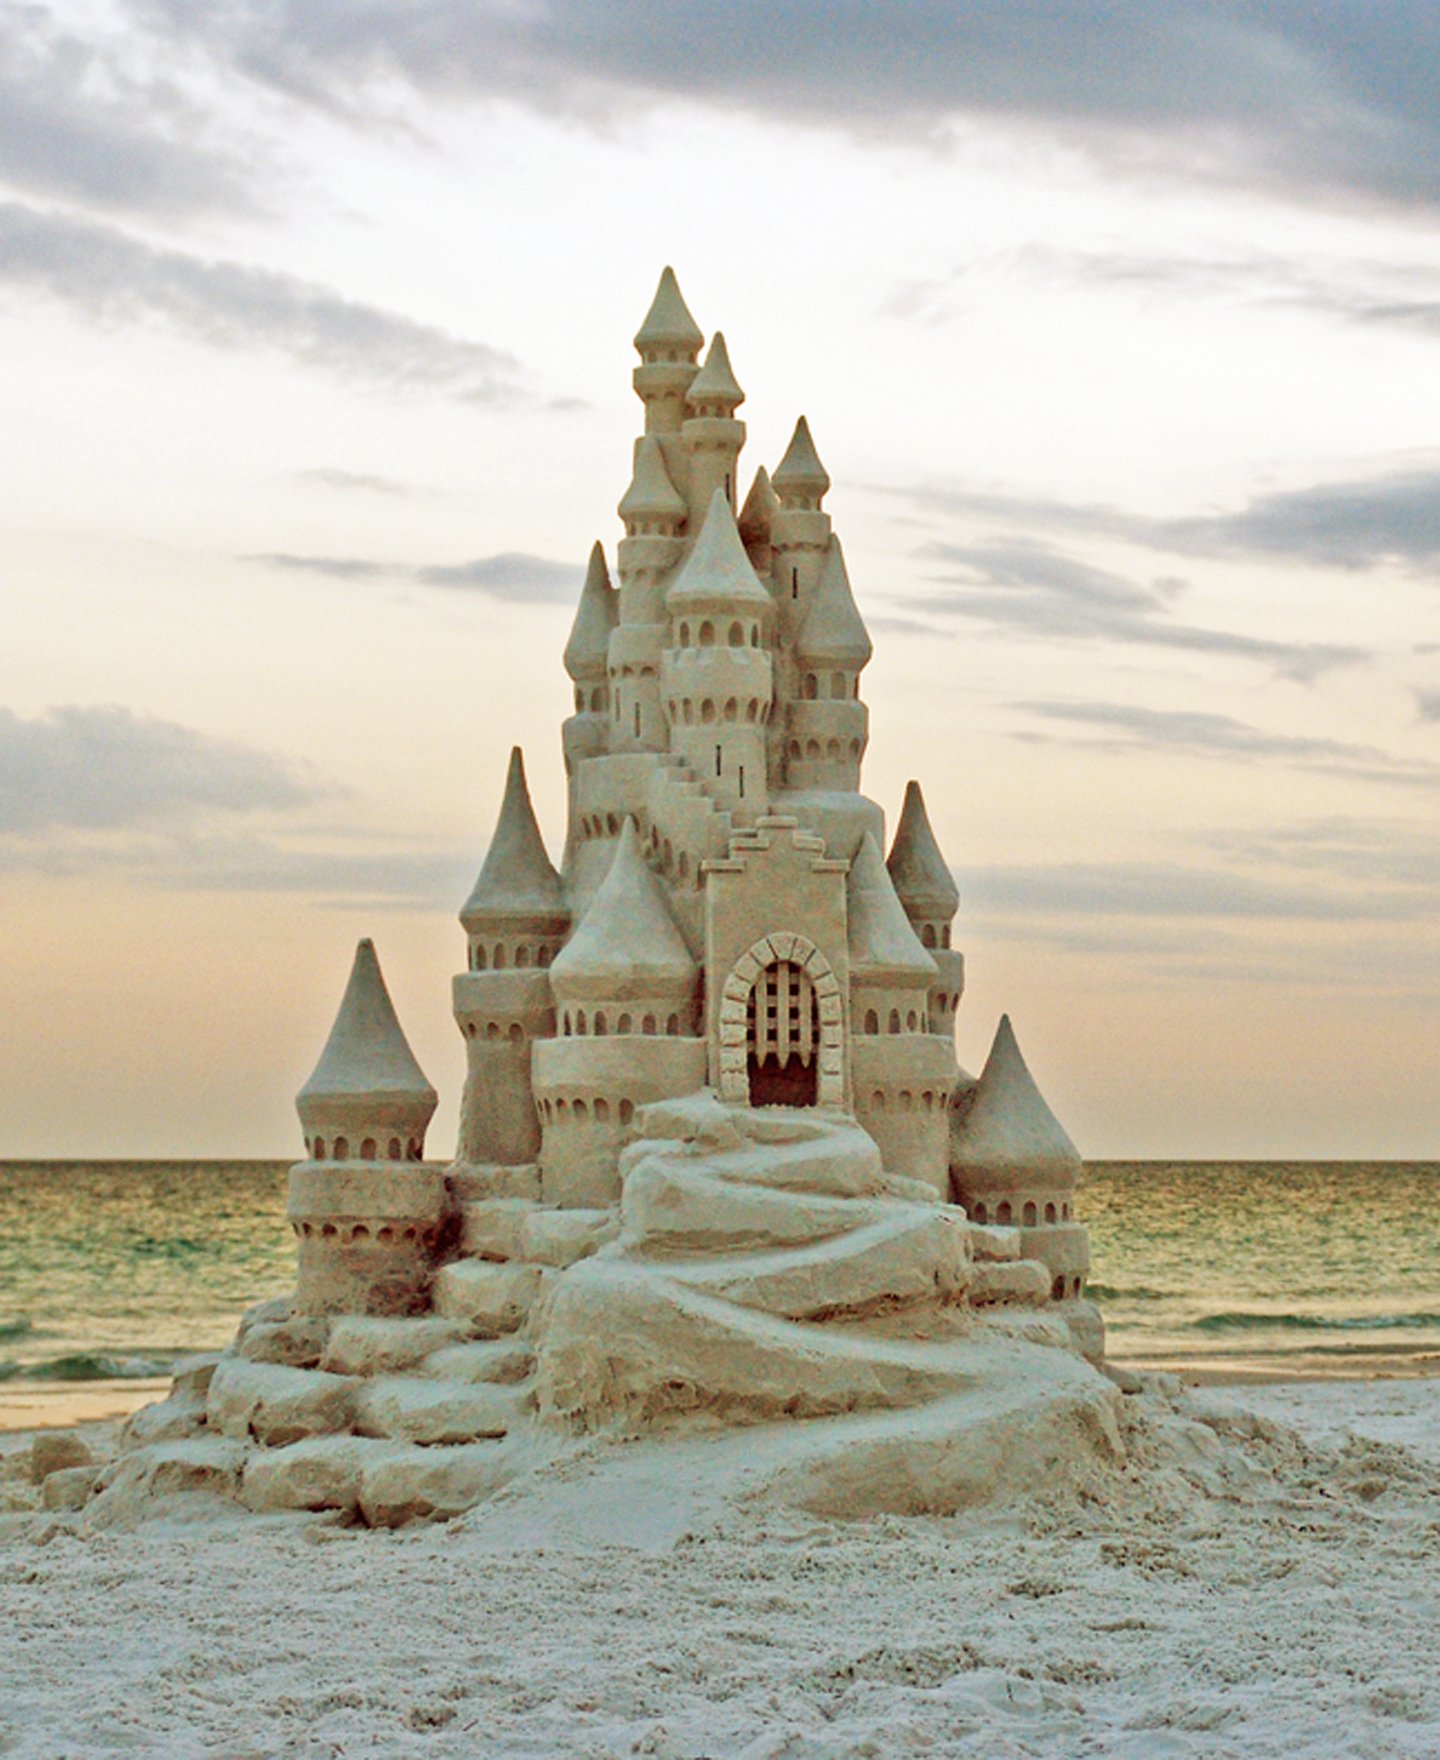 Sandcastle picture. Песчаный замок. Песочный замок. Дворец из песка. Красивый песчаный замок.